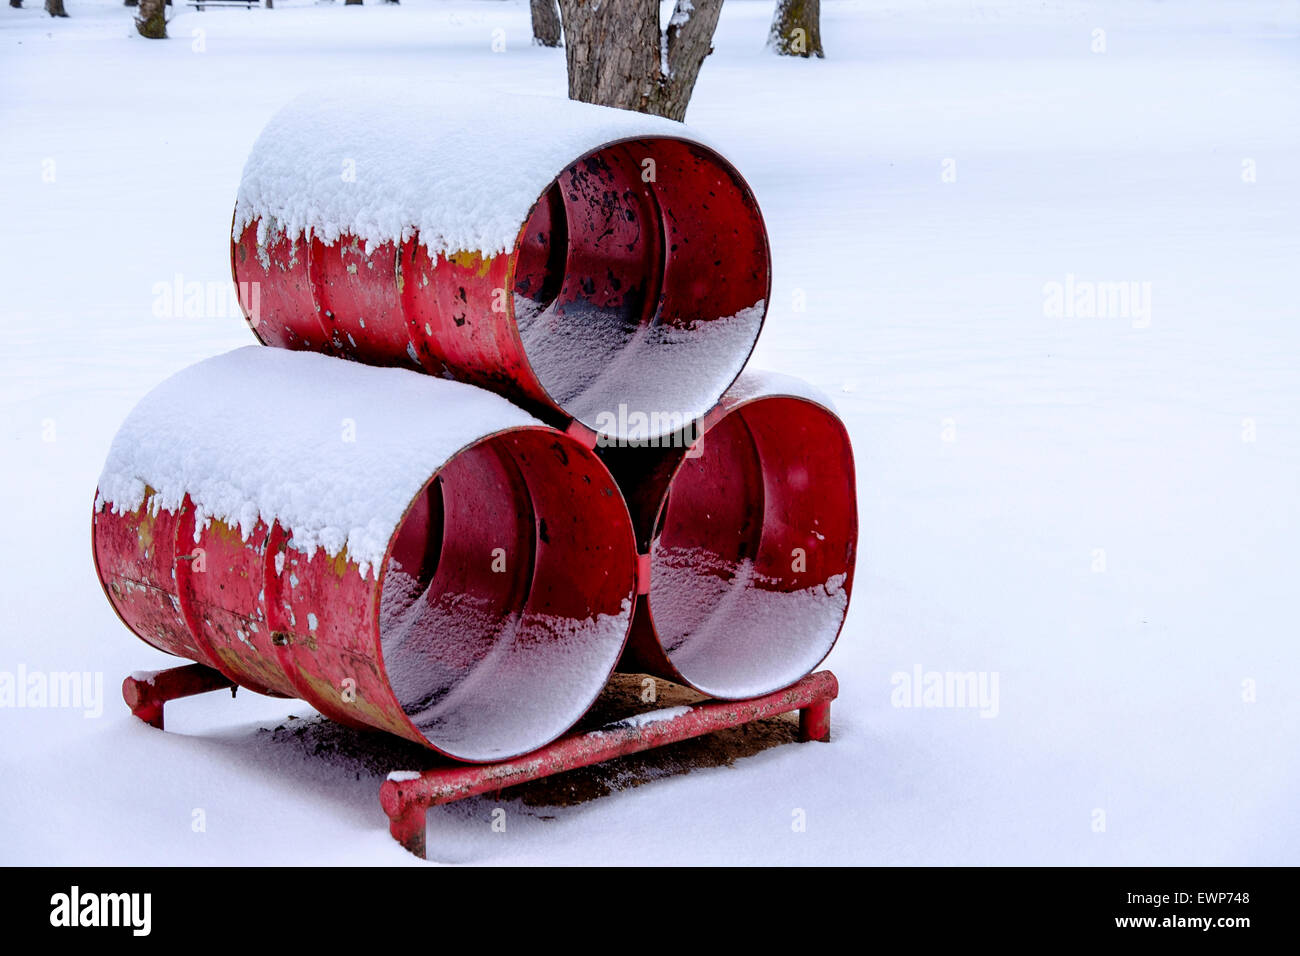 Tre rossi di barili saldate insieme per salire in un parco giochi per bambini. Inverno, la neve. Foto Stock